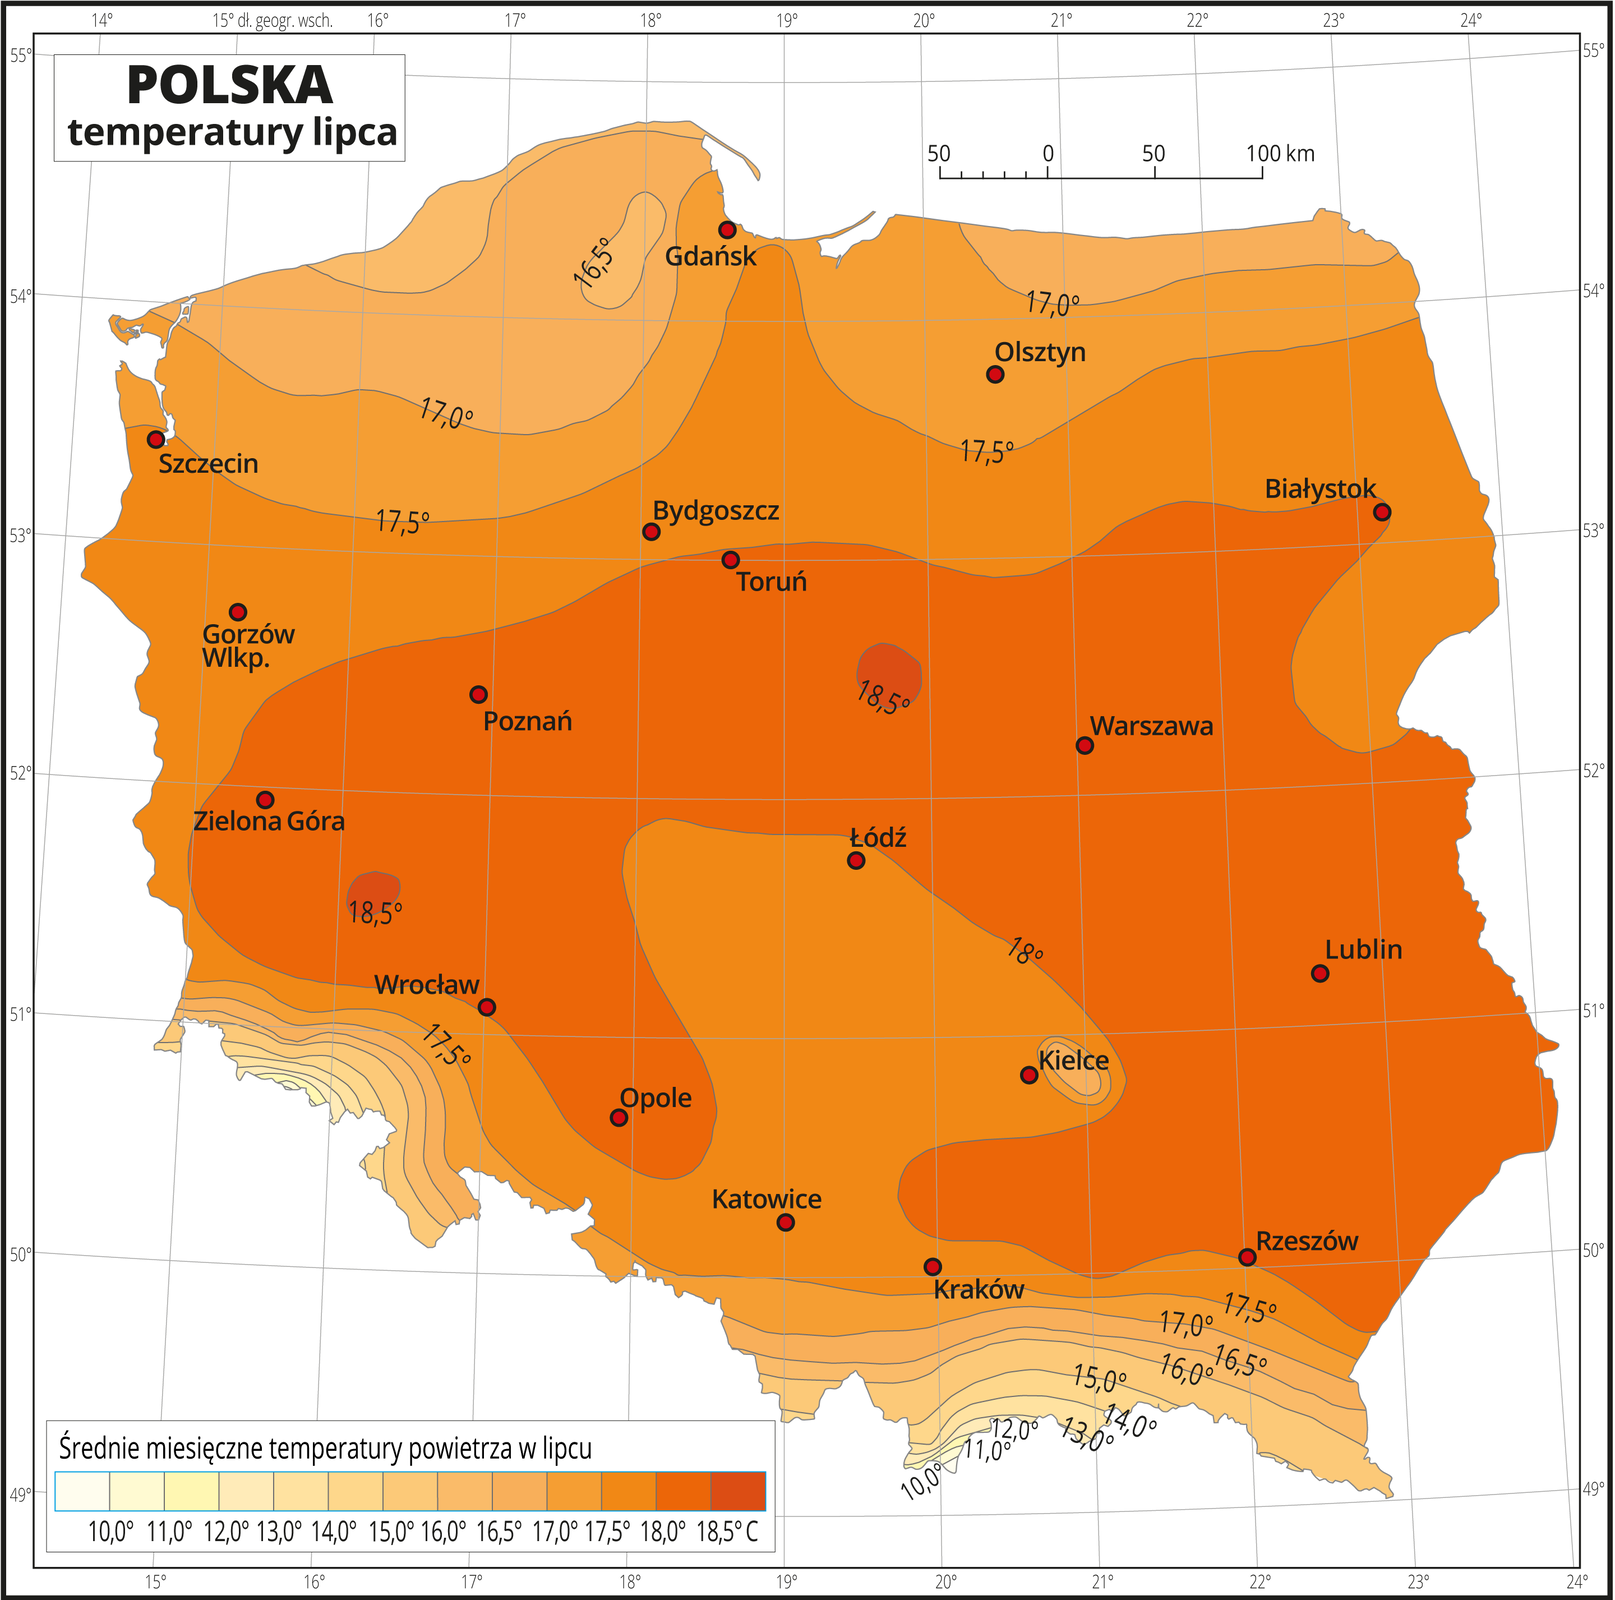 Ilustracja przedstawia mapę Polski. Na mapie odcieniami koloru pomarańczowego i żółtego zaznaczono średnie miesięczne temperatury powietrza w lipcu. W centralnej części mapy kolor jest najciemniejszy, w kierunku północnym i południowym przechodzi w jaśniejszy. Południowe krańce Polski (tereny górzyste) są w najjaśniejszym kolorze żółtym. Na izotermach opisano średnią miesięczną temperaturę lipca co jeden stopień od dziesięciu do szesnastu stopni, a dalej co pół stopnia – aż do osiemnastu i pół stopnia. Czerwonymi punktami zaznaczono miasta wojewódzkie. Mapa pokryta jest siatką równoleżników i południków. Dookoła mapy jest biała ramka, w której opisane są współrzędne geograficzne co jeden stopień. Poniżej mapy w legendzie umieszczono prostokątny poziomy pasek. Pasek podzielono na trzynaście kolorów. Z lewej strony jasnożółte, środek jasnopomarańczowy, z prawej najciemniejsze odcienie koloru pomarańczowego. Każda część paska obrazuje jednostopniowy (powyżej szesnastu stopni – półstopniowy) przedział średniej miesięcznej temperatury powietrza w lipcu od dziesięciu stopni Celsjusza (kolory żółte) do ponad osiemnastu stopni Celsjusza (kolory pomarańczowe).